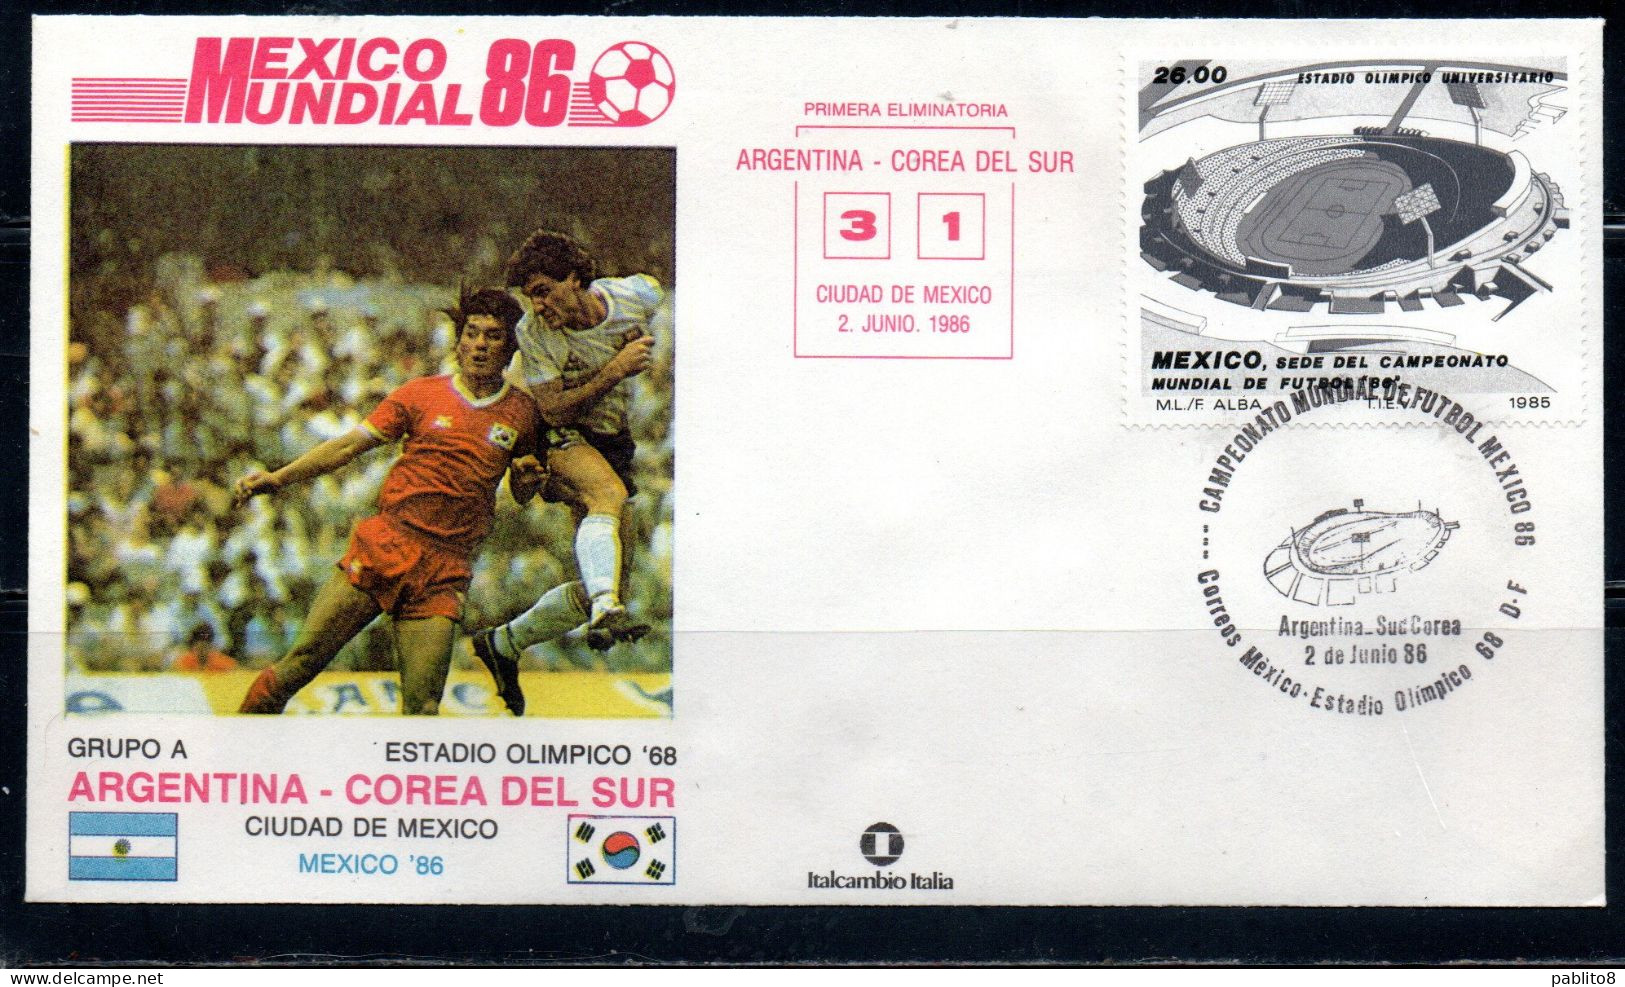 MEXICO 86 MESSICO 1986 SOCCER FIFA WORLD CUP CALCIO ARGENTINA - COREA DEL SUR SOUTH SUD 3-1 CIUDAD DE MEXICO FDC COVER - Mexique